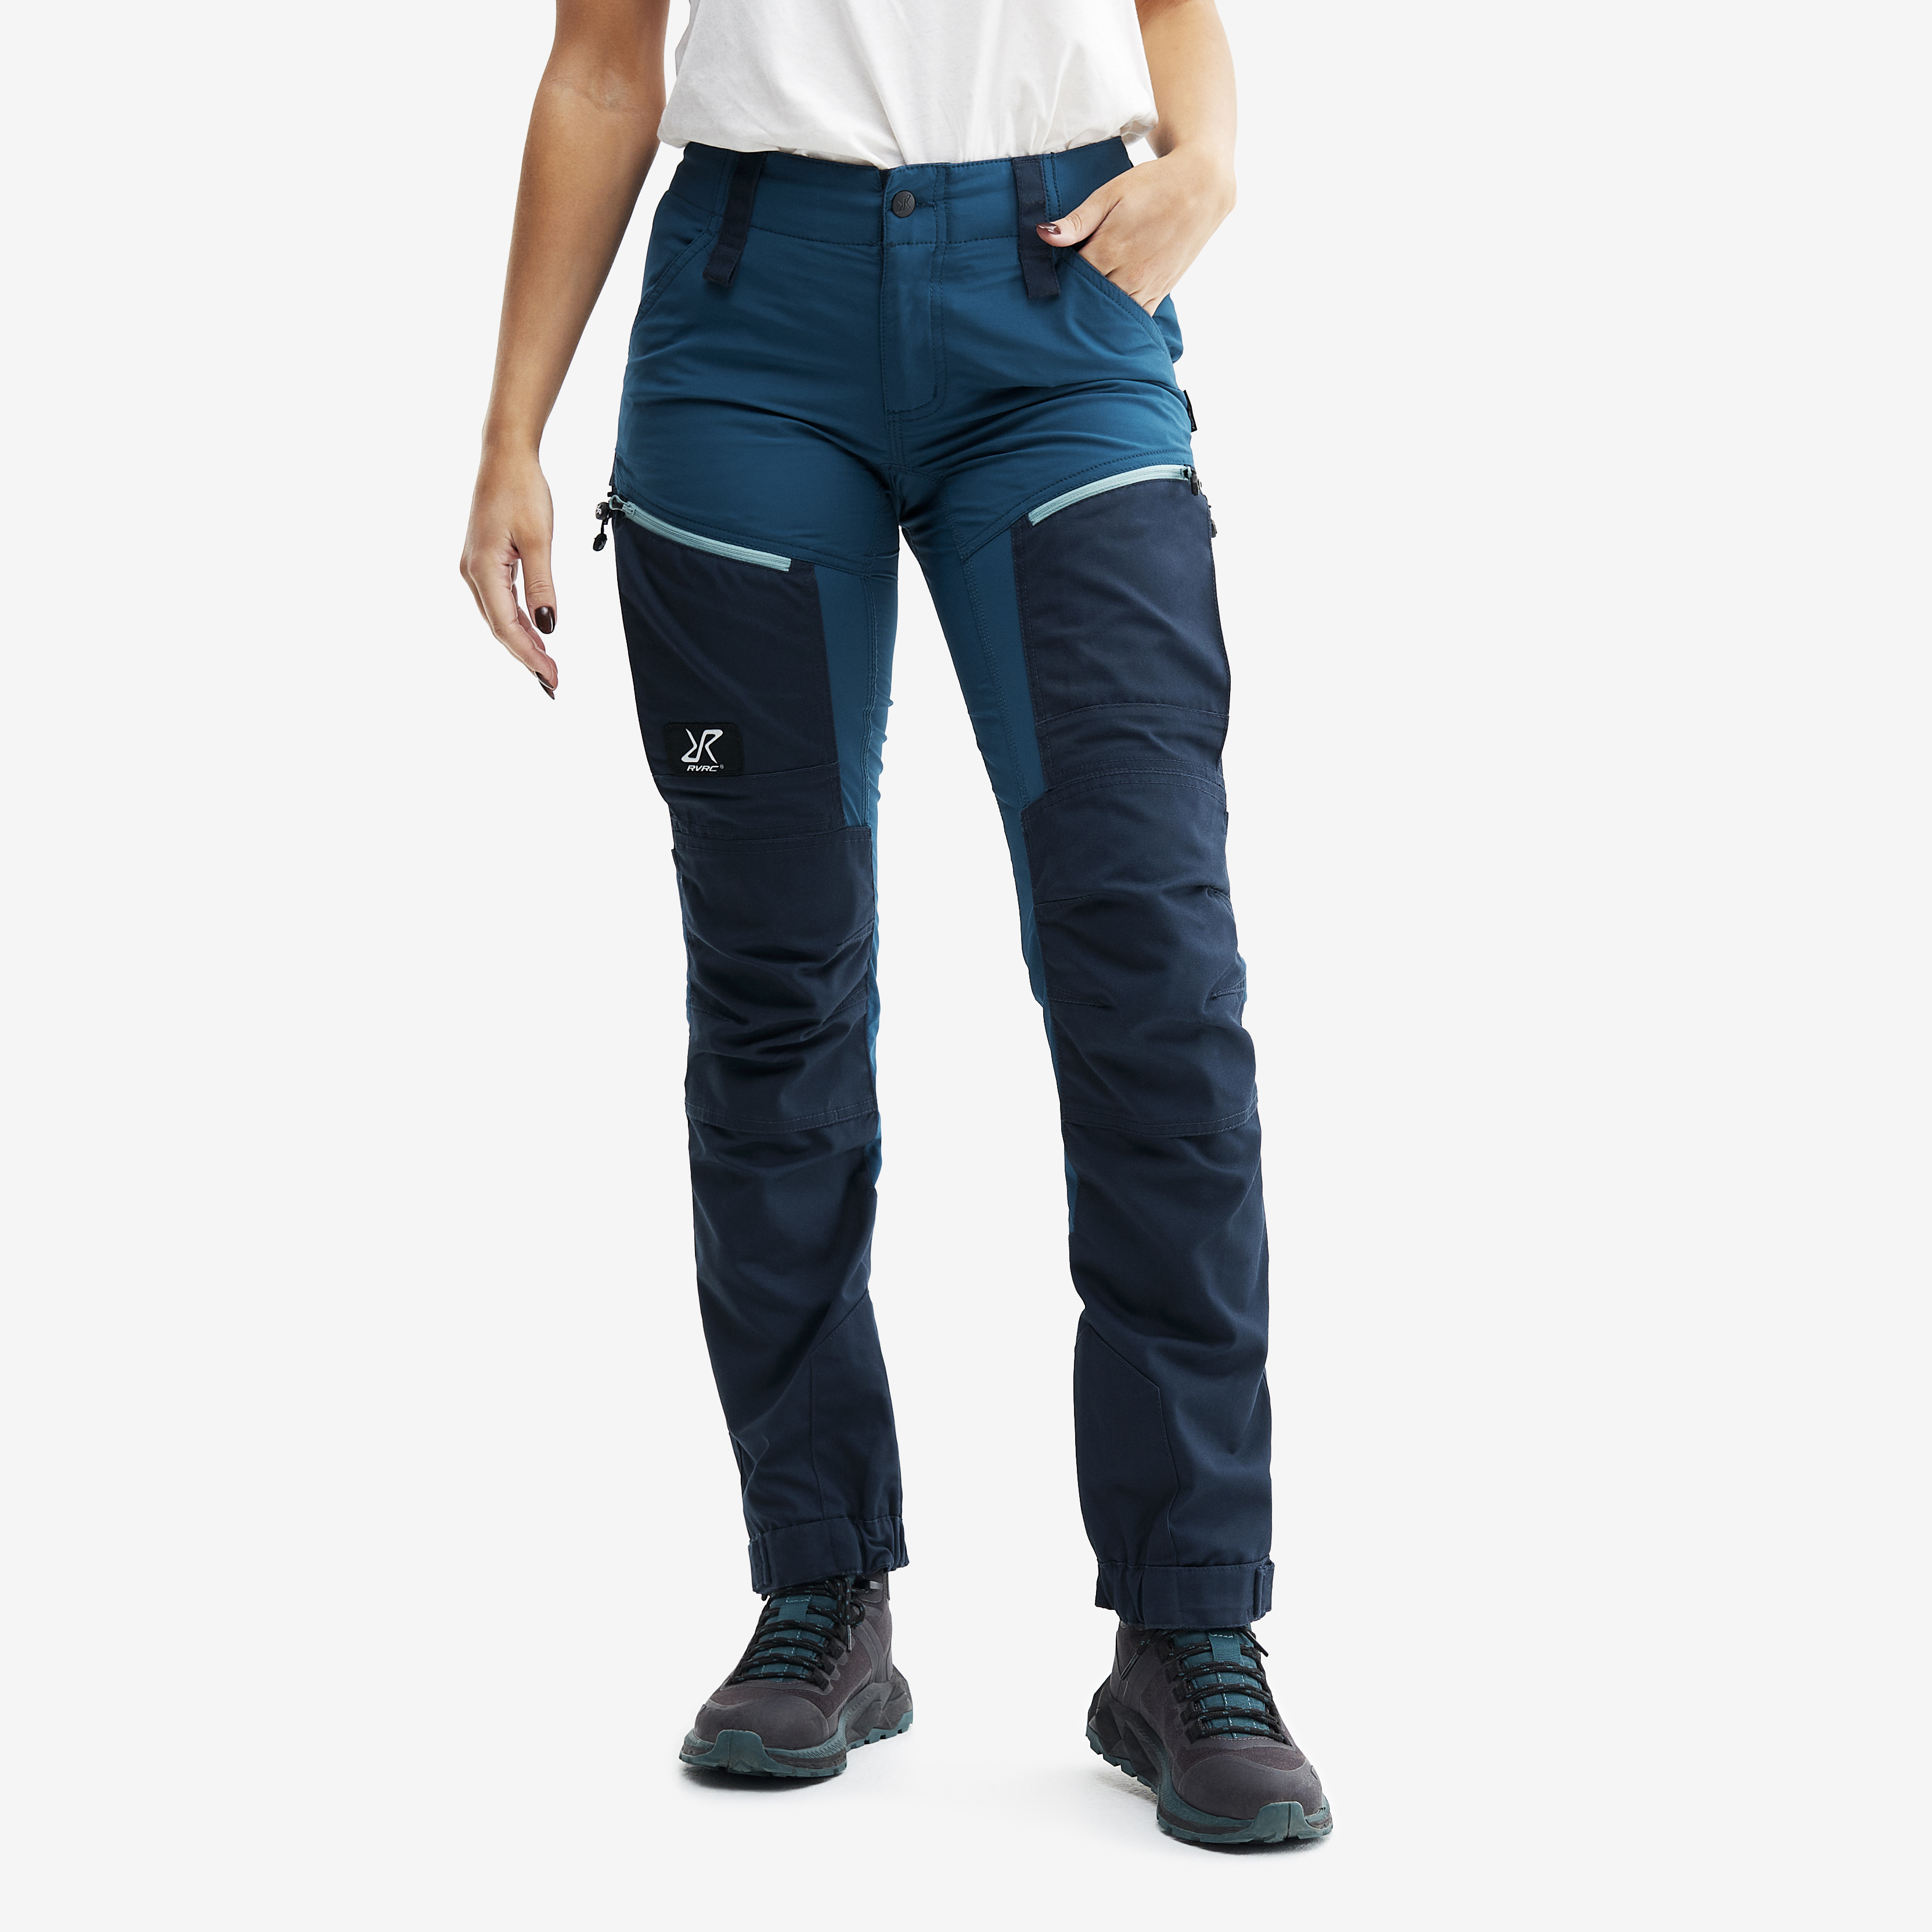 RVRC GP Pro turistické kalhoty pro ženy v modré barvě